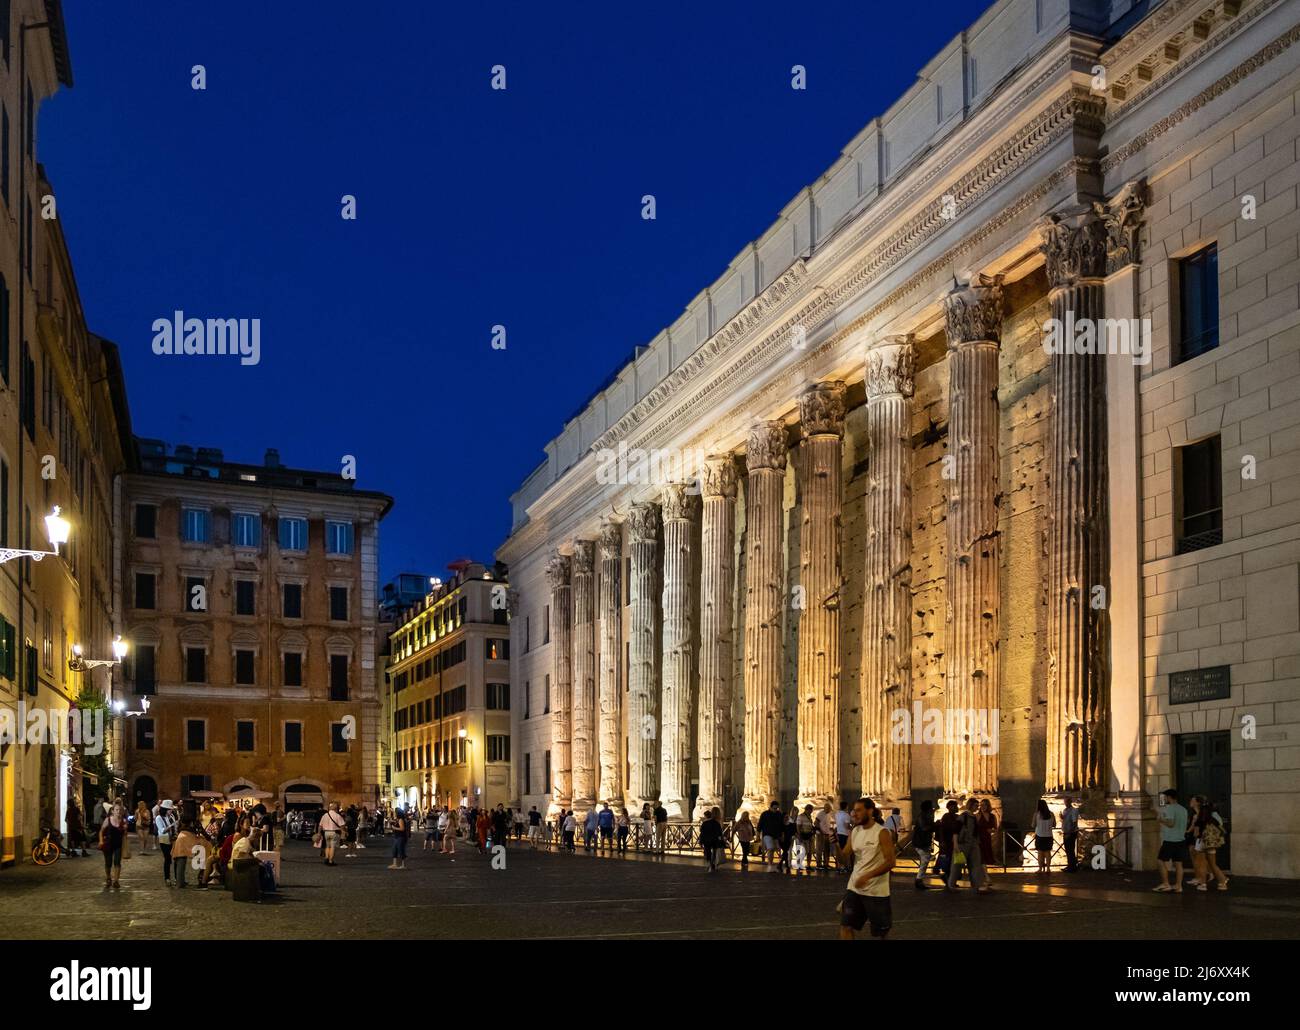 Roma, Italia - 27 de mayo de 2018: Templo de Adriano antiguo muro con  columnata ahora fachada de la bolsa de la Cámara de Comercio en la plaza  Piazza di Pietra en